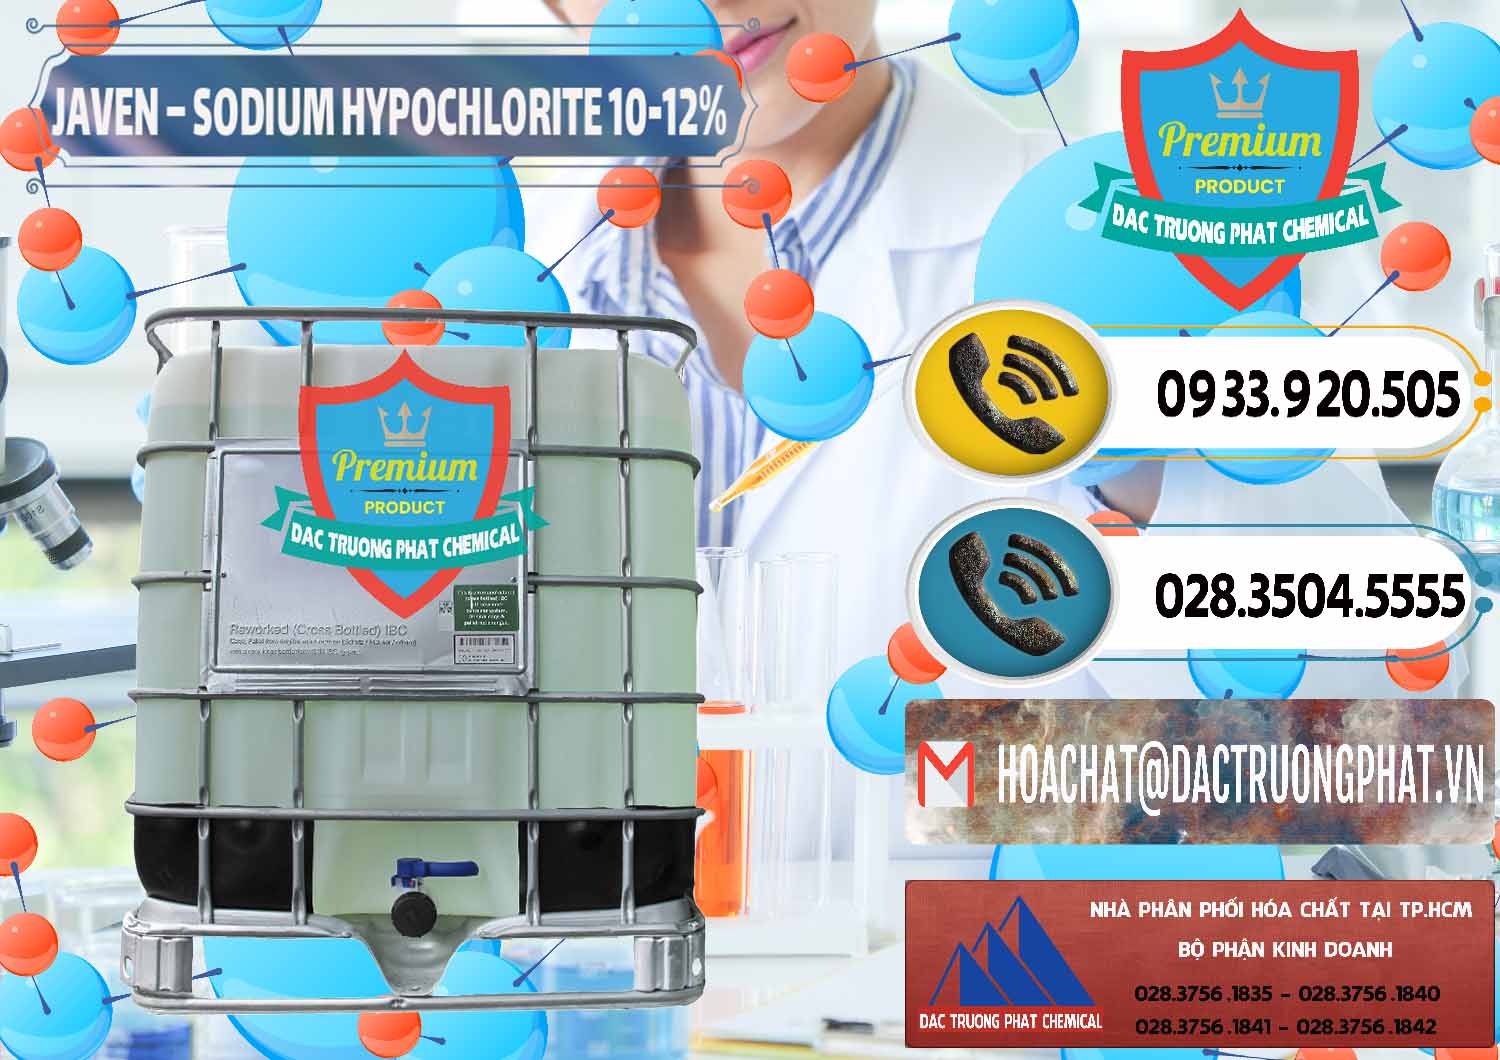 Công ty bán ( cung cấp ) Javen - Sodium Hypochlorite 10-12% Việt Nam - 0188 - Cty chuyên cung ứng ( bán ) hóa chất tại TP.HCM - hoachatdetnhuom.vn